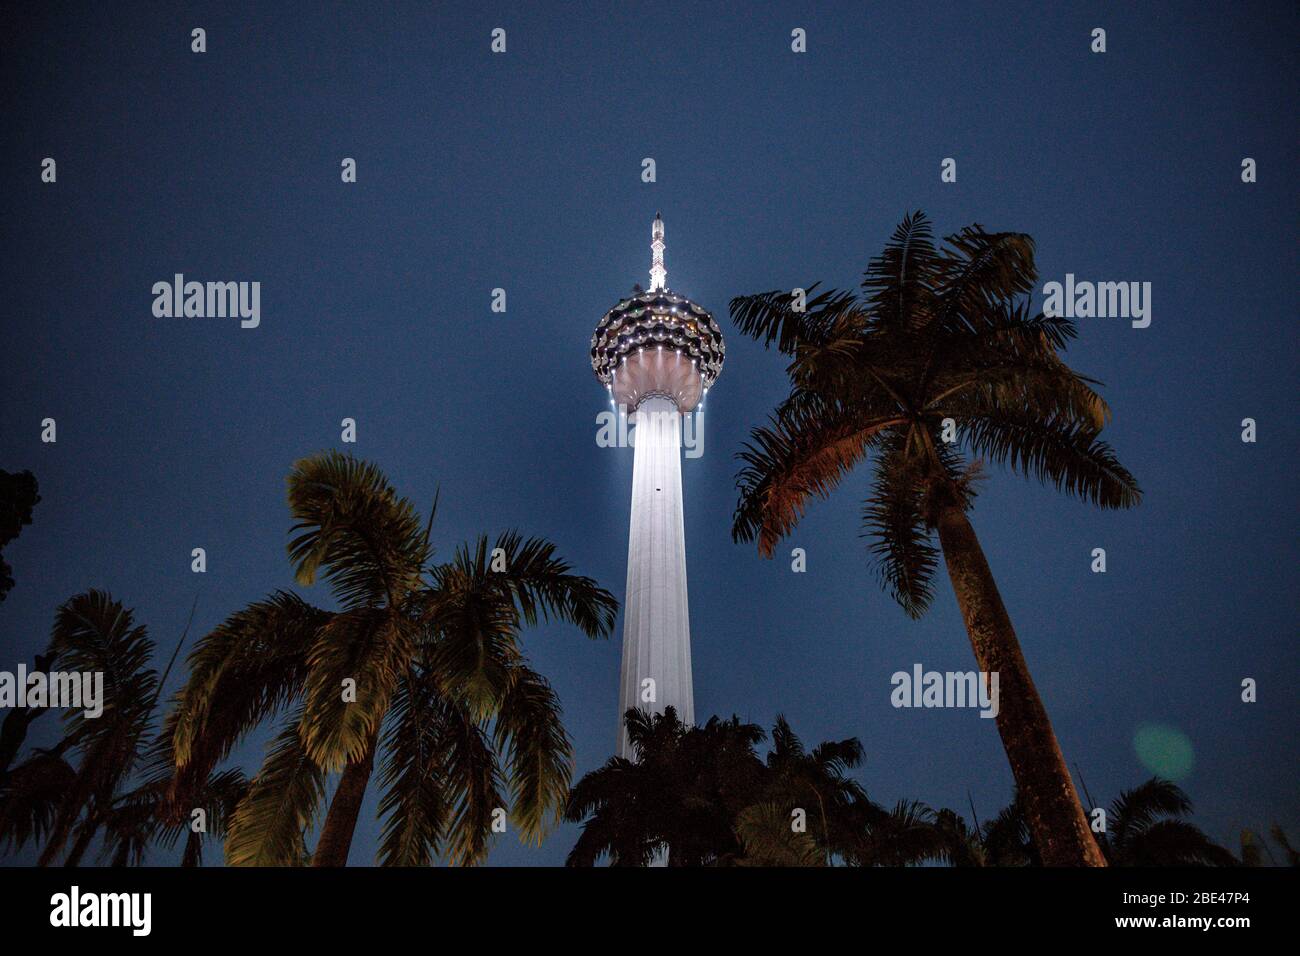 Kuala Lumpur Kommunikation Turm und Palmen in einer Nacht Blick aus einem Park - Torre de comunicaciones y palmeras en una vista nocturna desde un parque Stockfoto